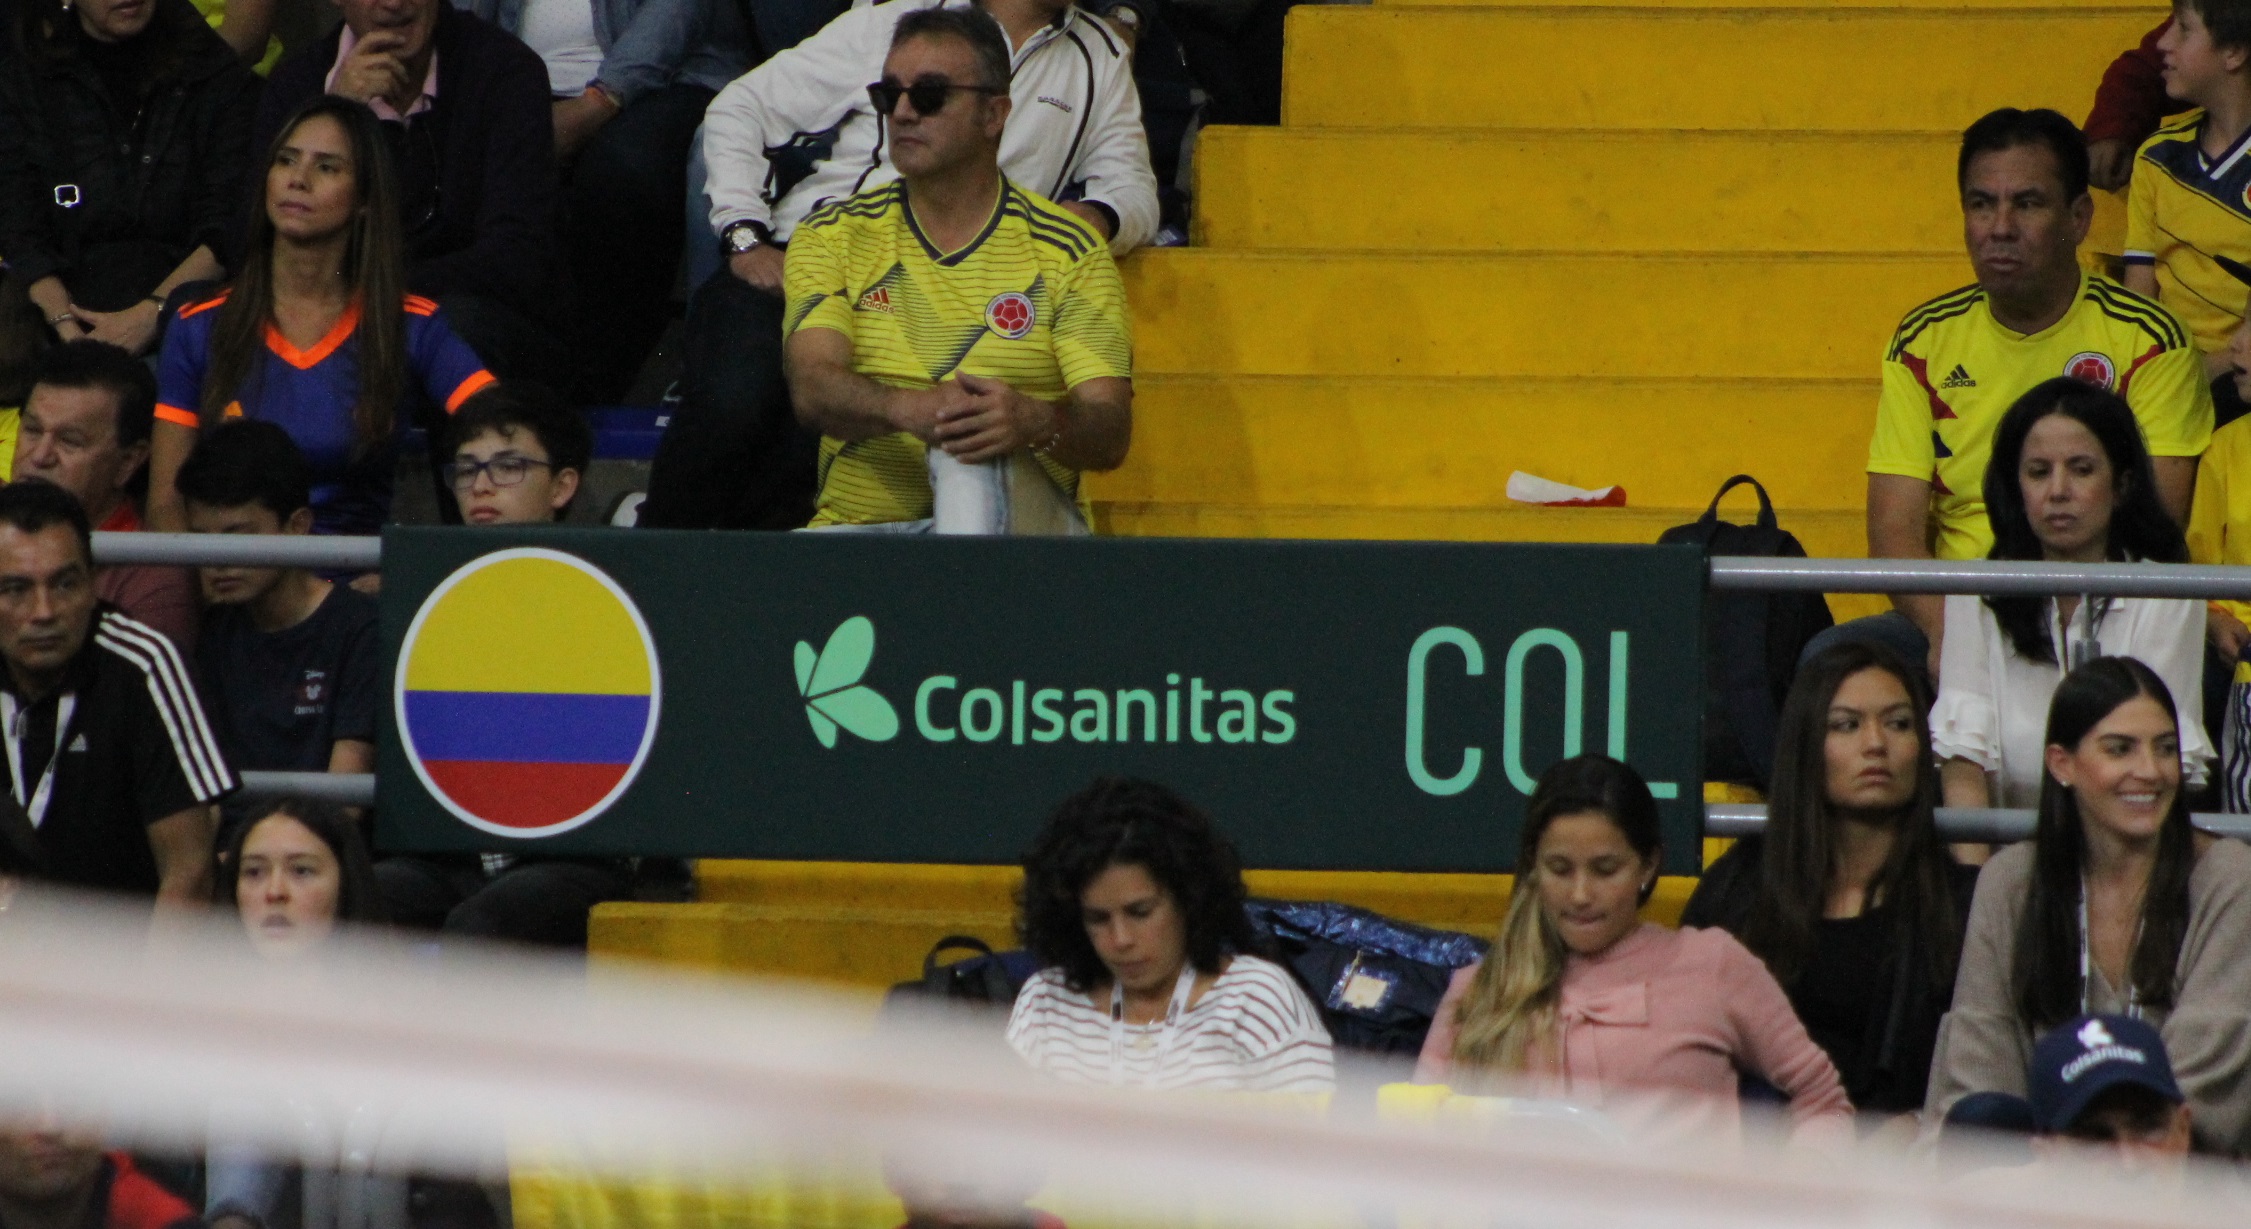 Colsanitas Patrocinador Copa Davis.JPG (758 KB)